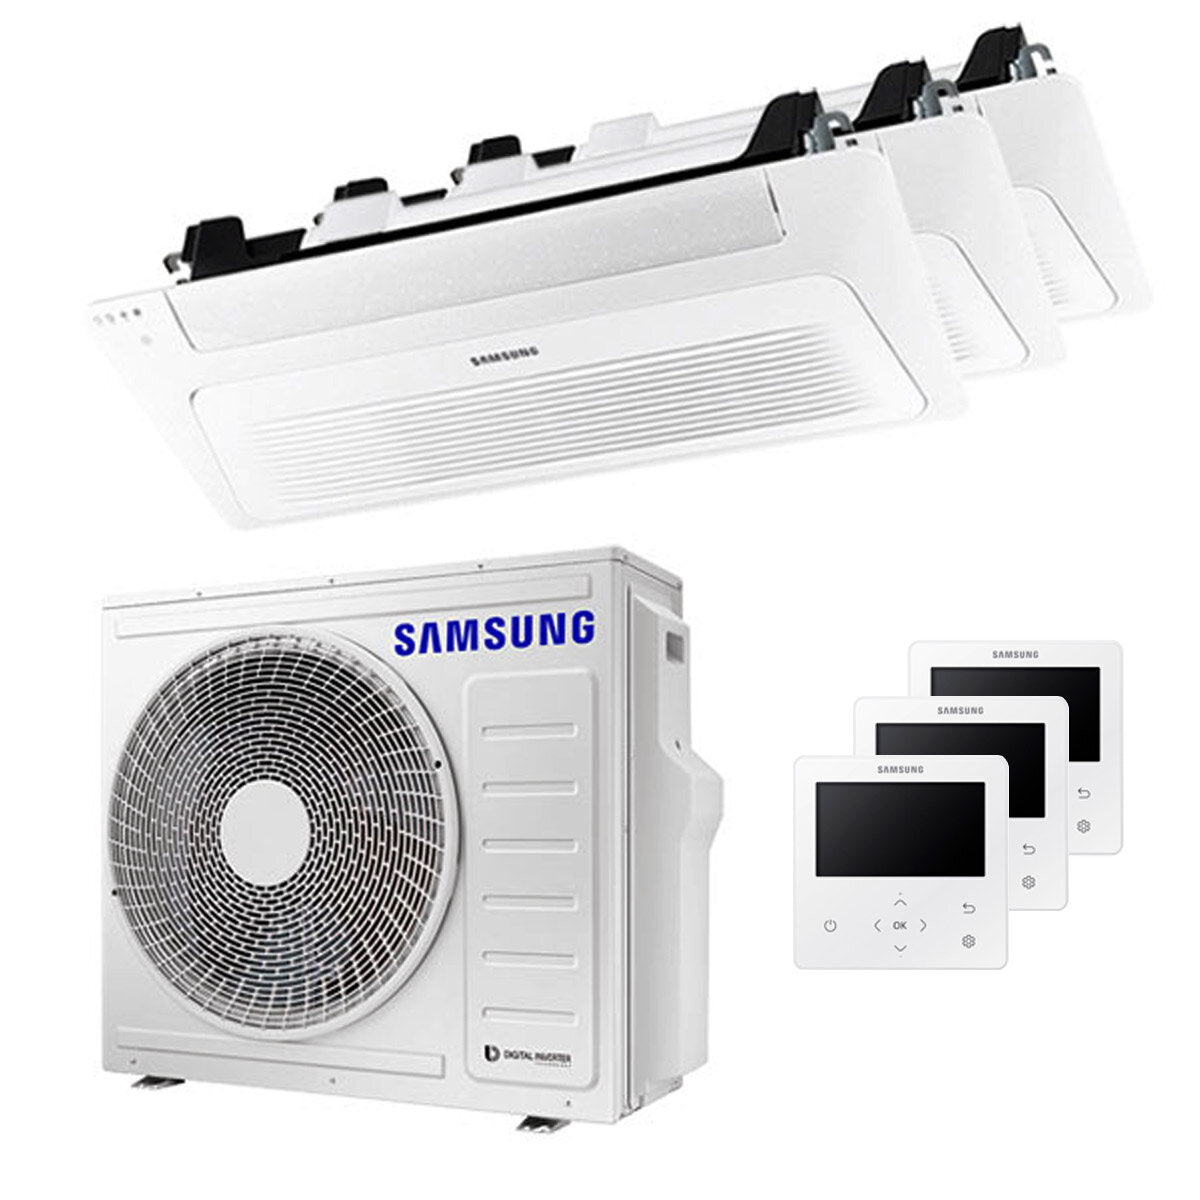 Samsung Climatiseur Cassette WindFree 1 Way trial split 12000 + 12000 + 12000 BTU inverter A++ unité extérieure 8,0 kW